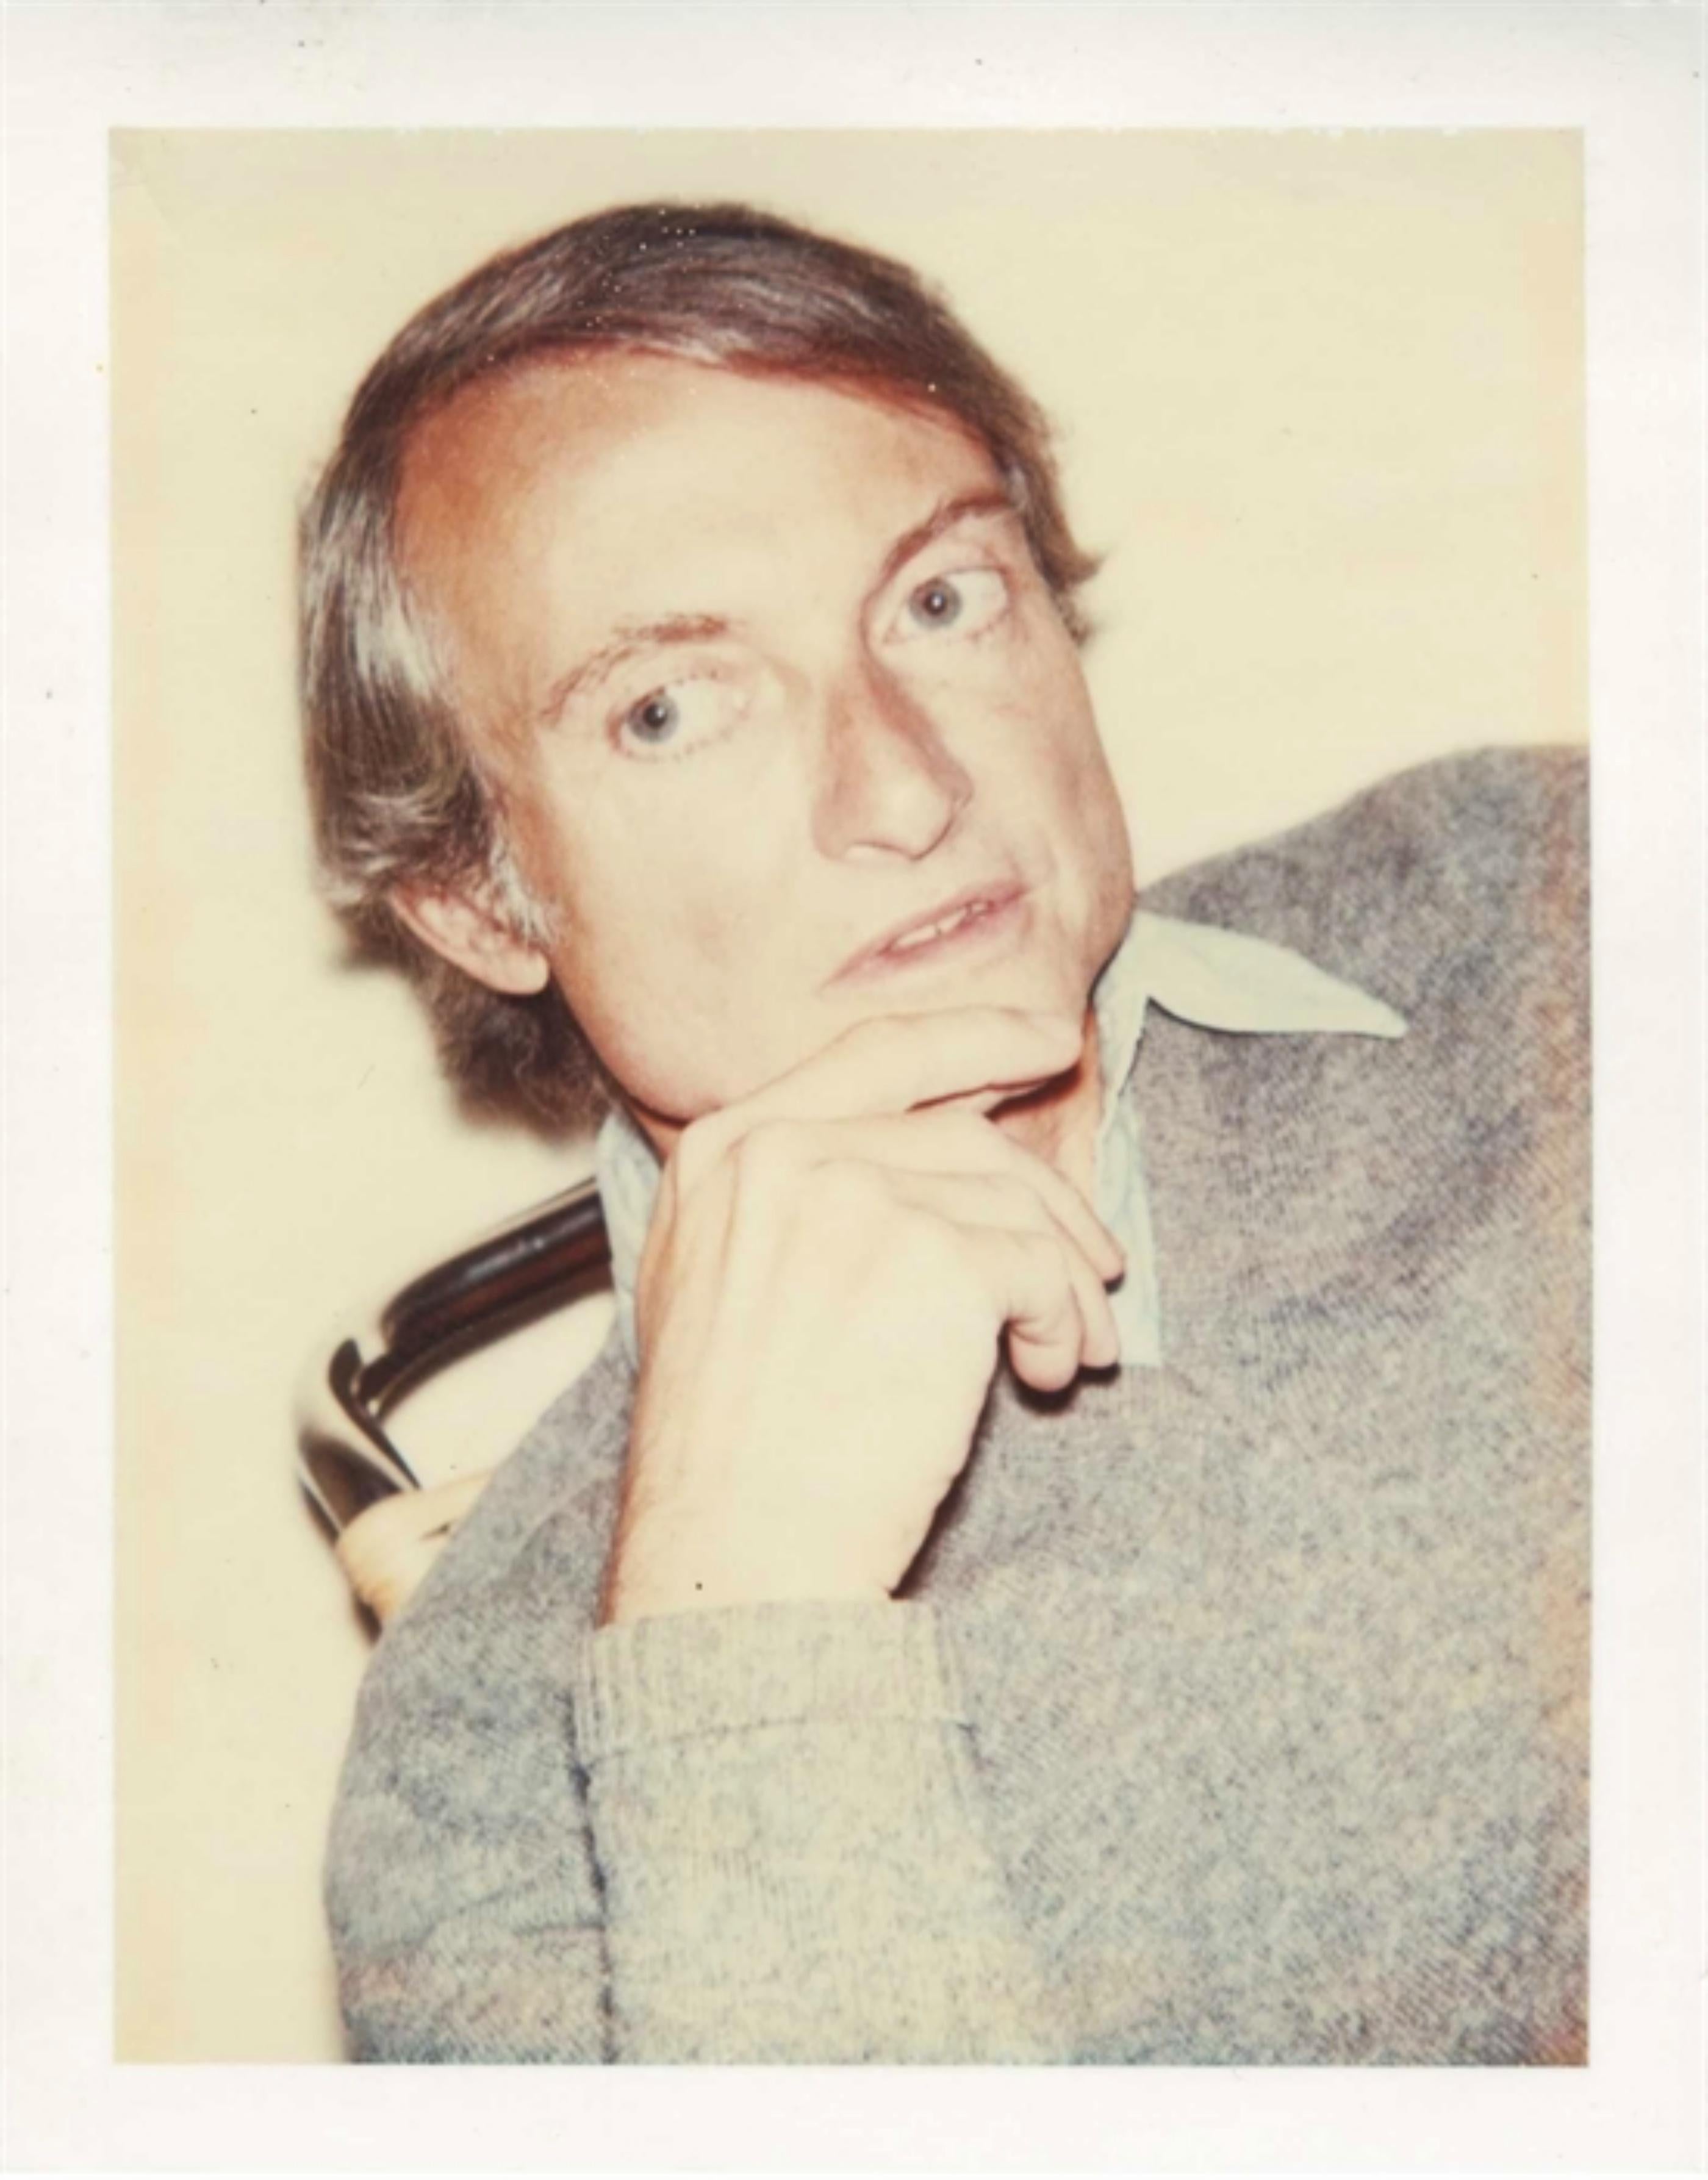 Polaroid unique de Roy Lichtenstein, authentifié par la Fondation Andy Warhol